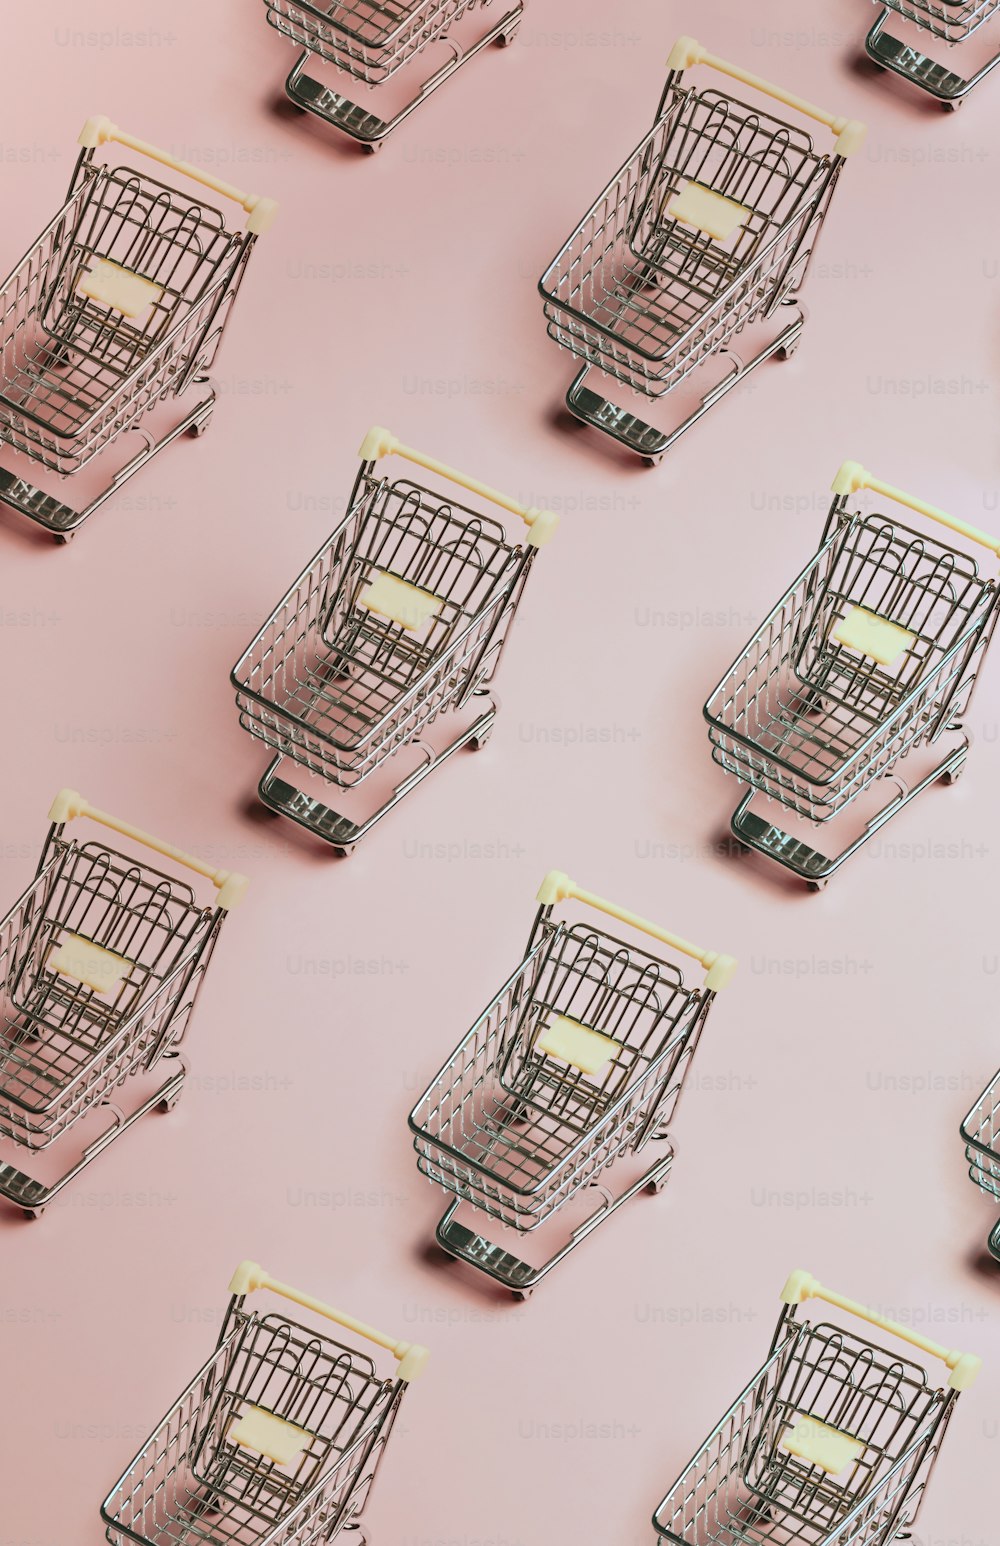 Un grupo de carritos de compras sentados encima de una superficie rosa